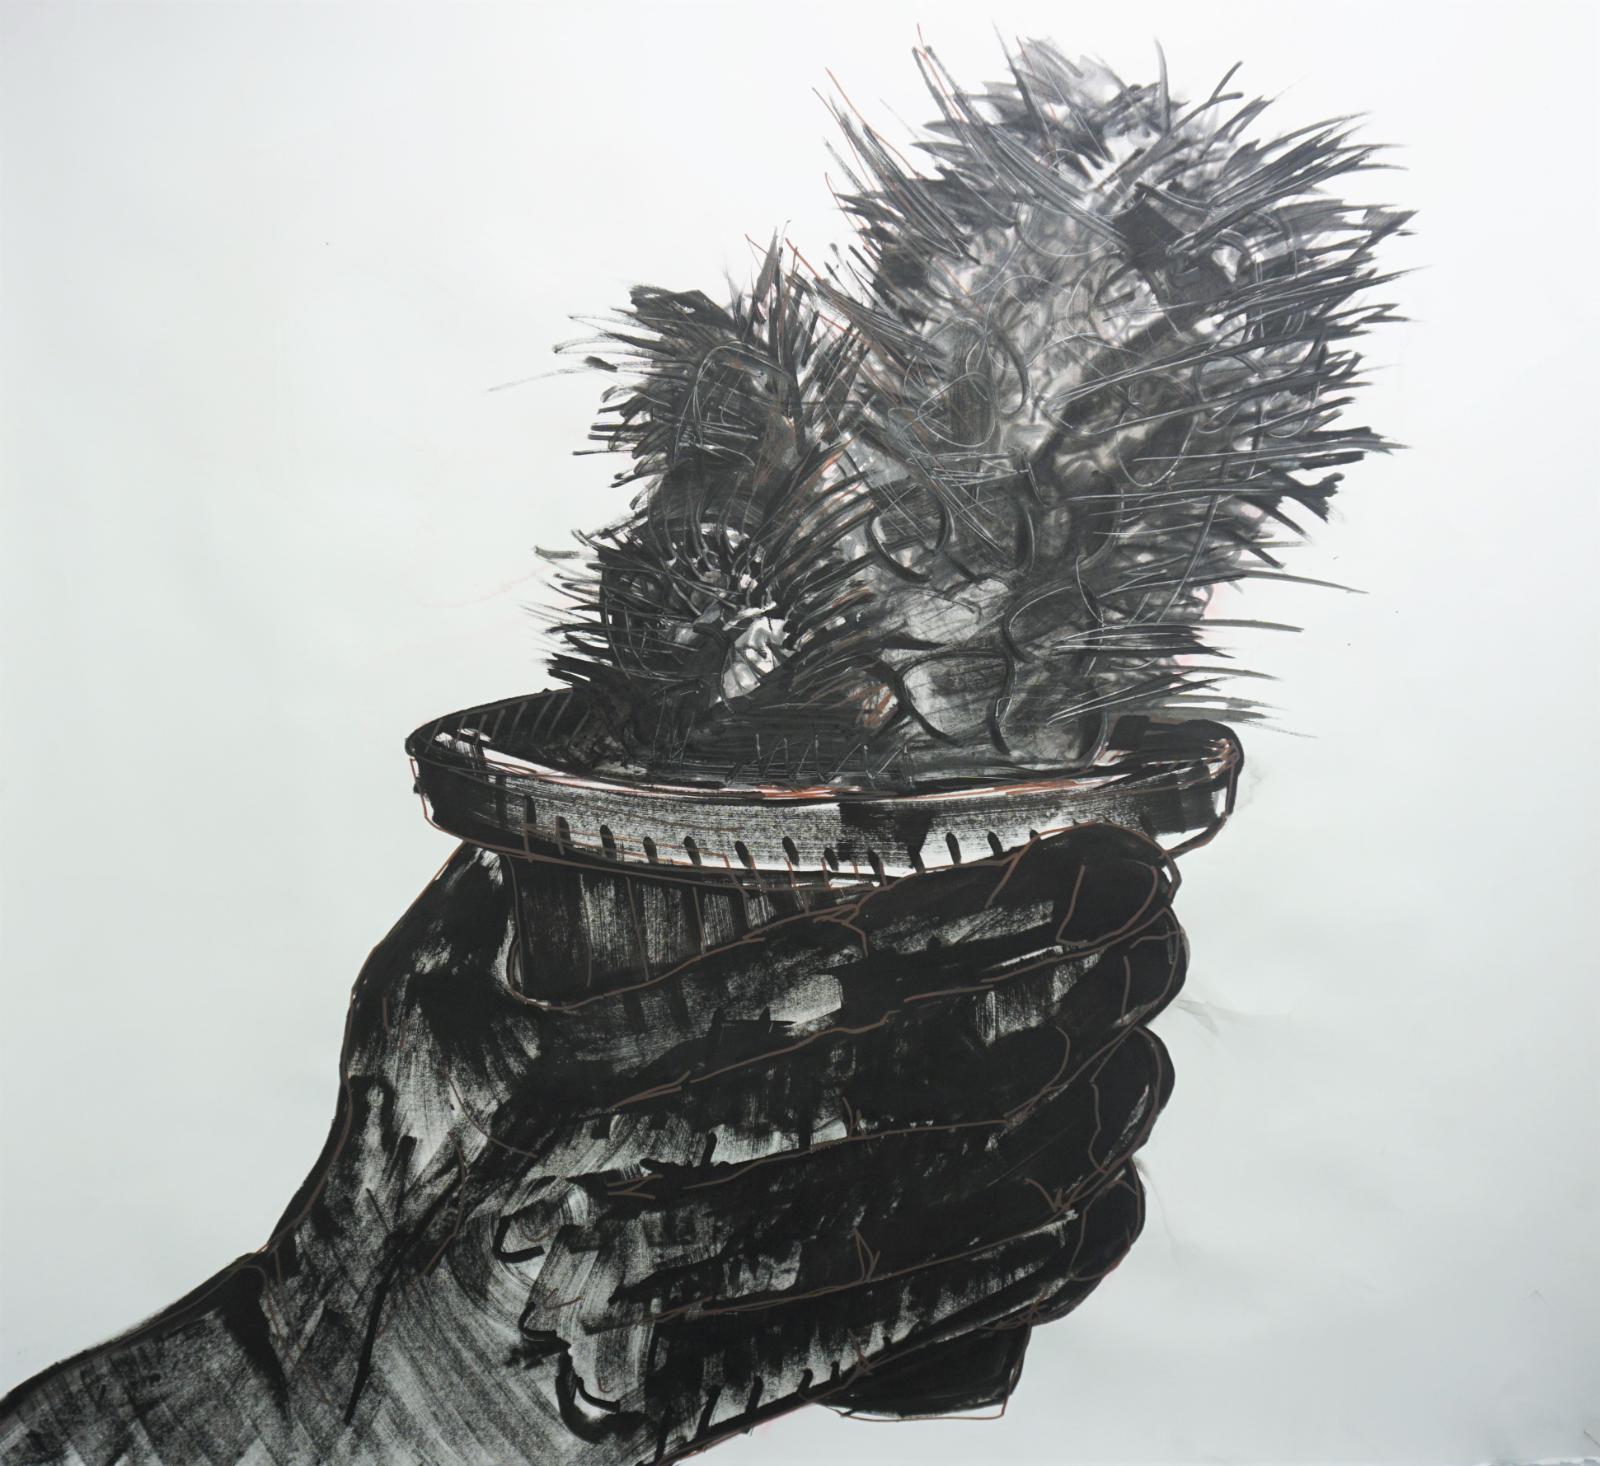 Daniel Wagenblast, kaktus 3, 2018, Zeichnung, 115 x 126 cm, Preis auf Anfrage, Galerie Cyprian Brenner